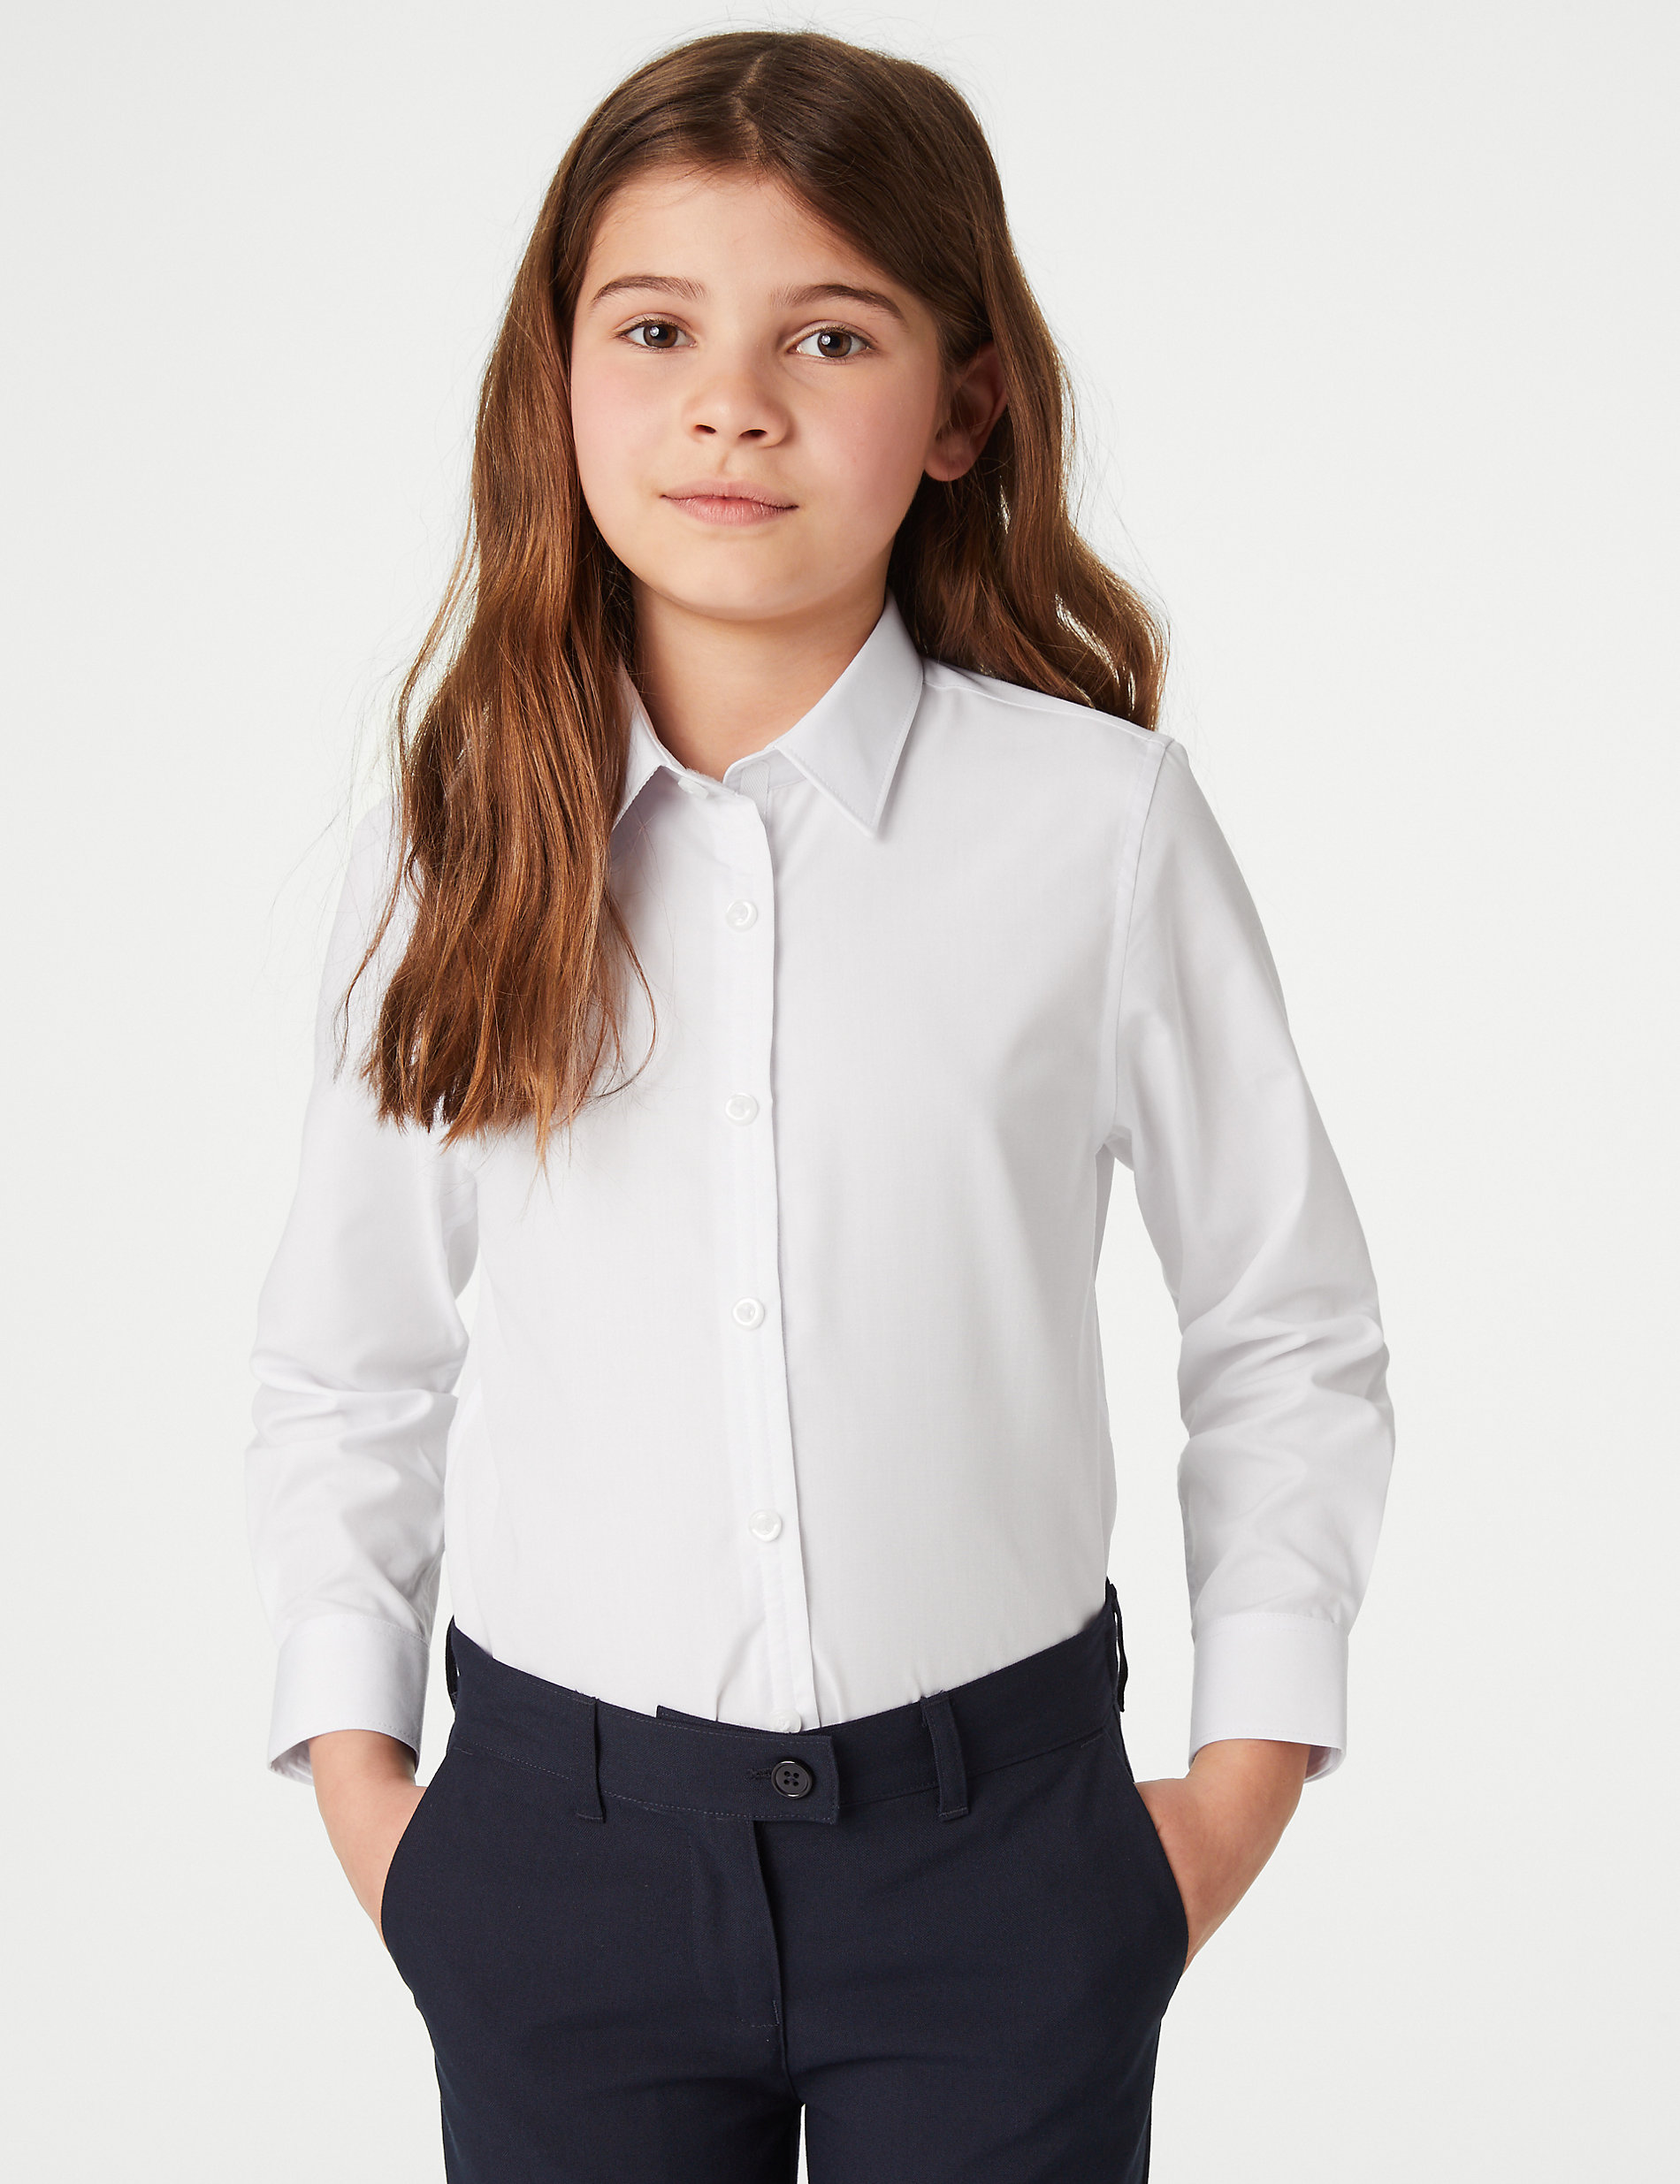 Lot de 3&nbsp;chemises filles faciles à enfiler et à repasser, idéales pour l’école (du 3&nbsp;au 18&nbsp;ans)